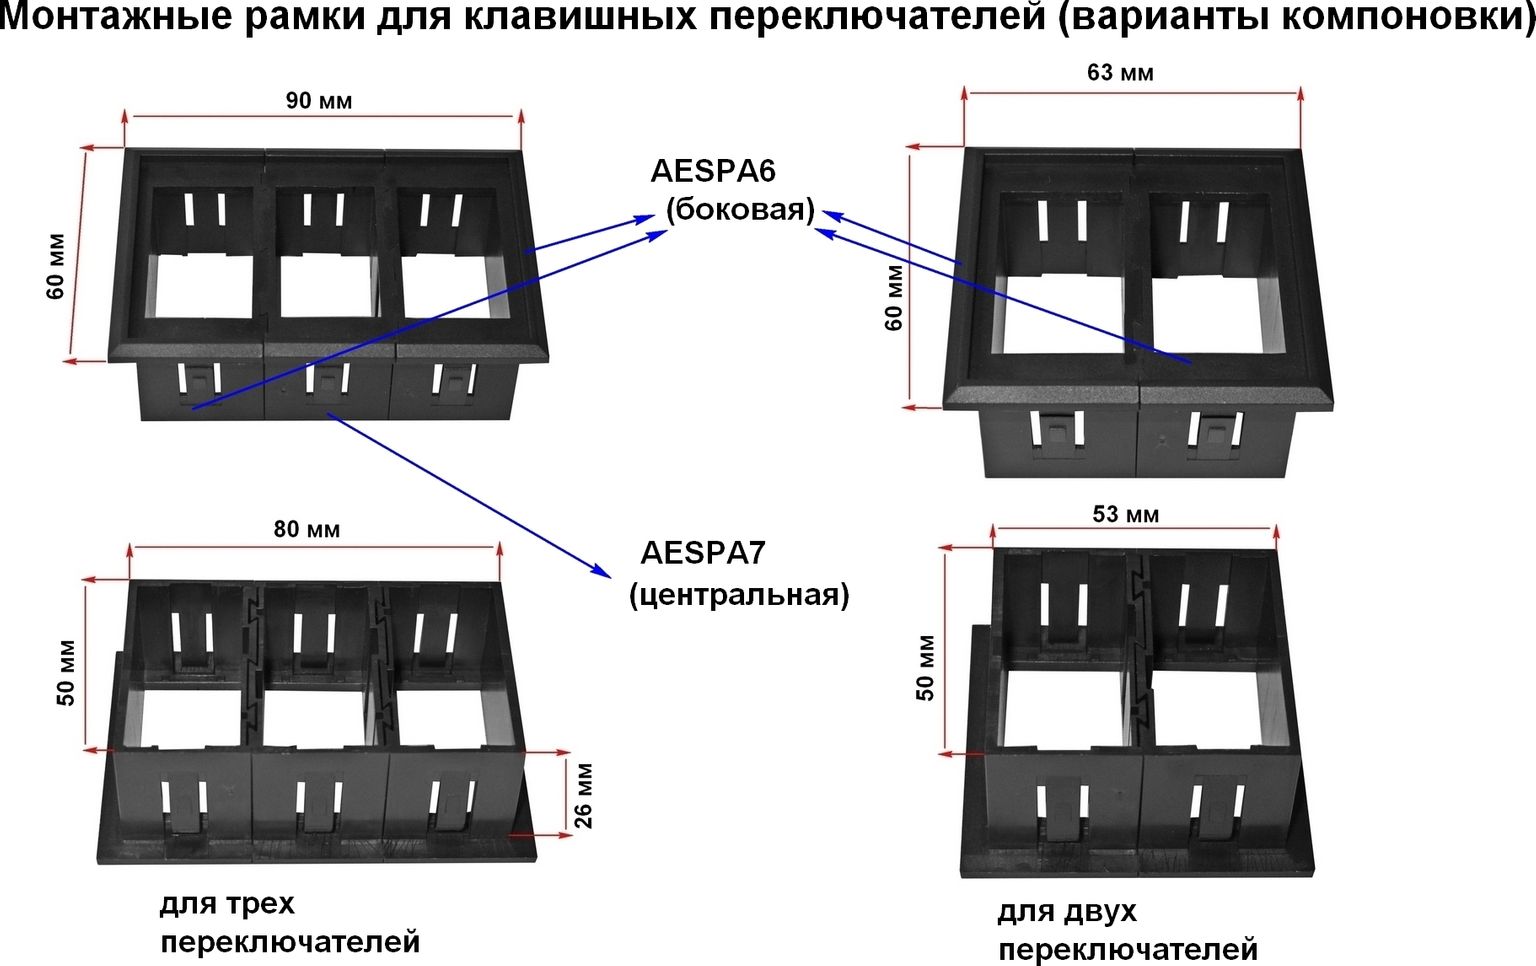 Панель центральная для групповой установки переключателей AES11188Х AESPA7 - фото 2